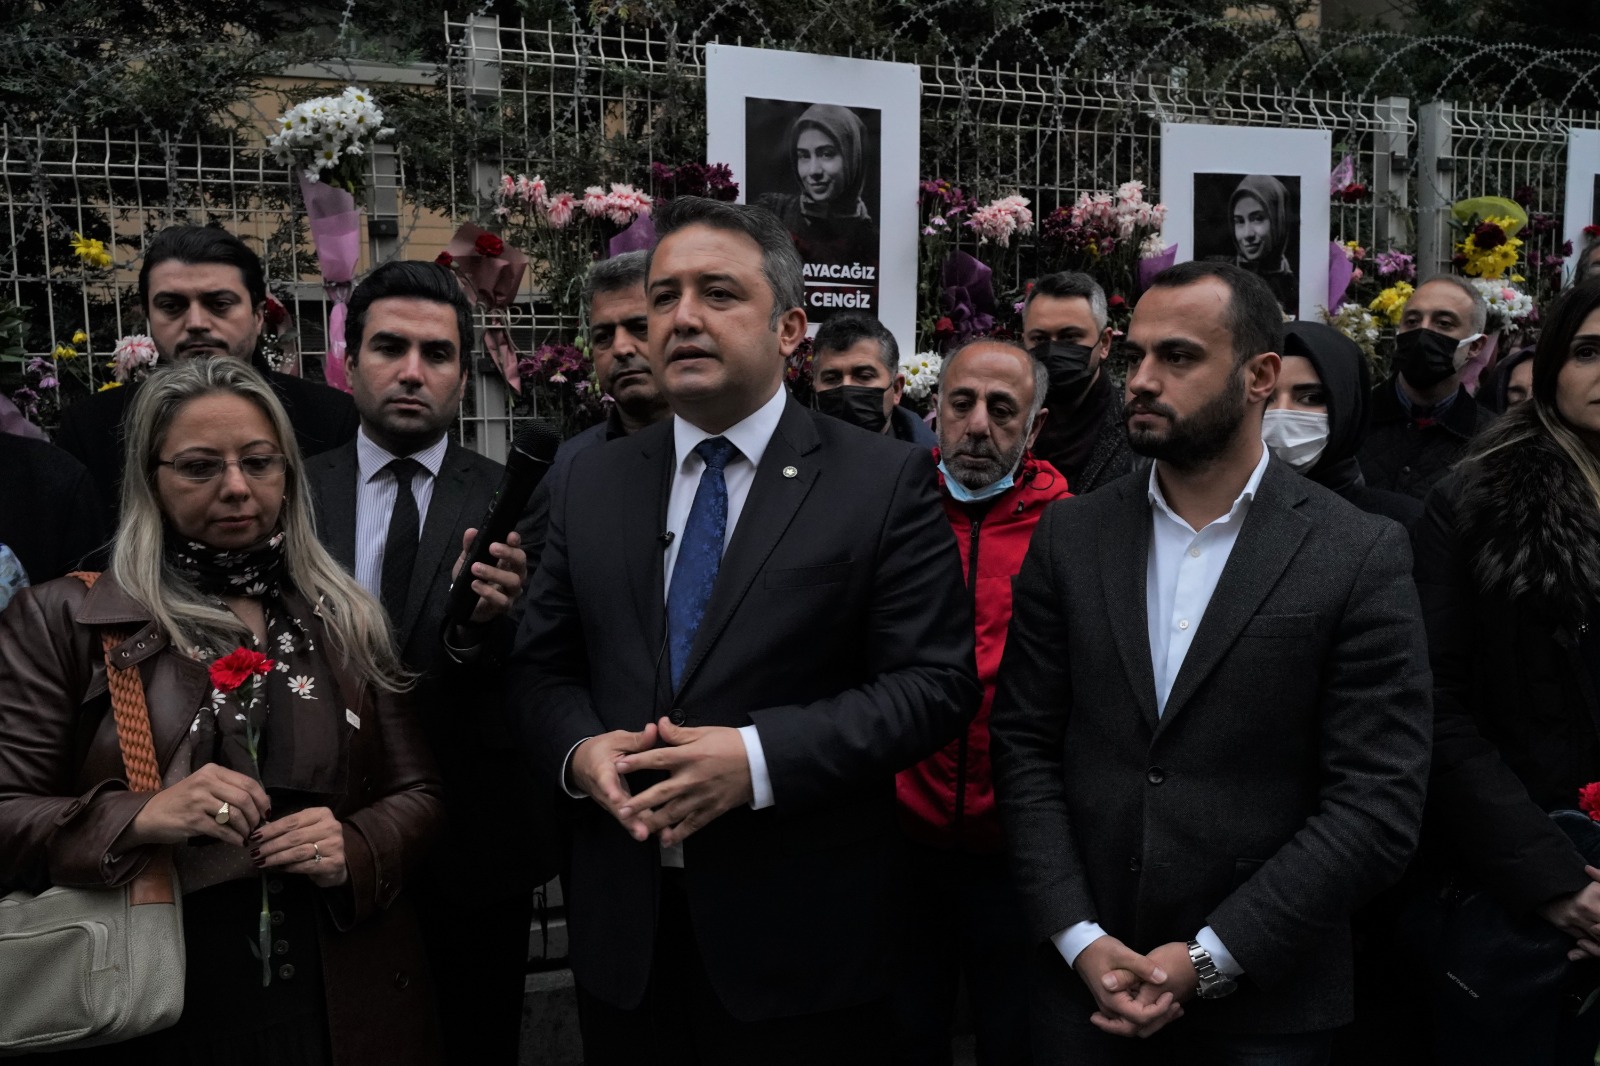 Mimar Başak Cengiz cinayetine ilişkin, olayın yaşandığı yerde Gelecek Partisi olarak gerçekleştirdiğimiz basın açıklaması